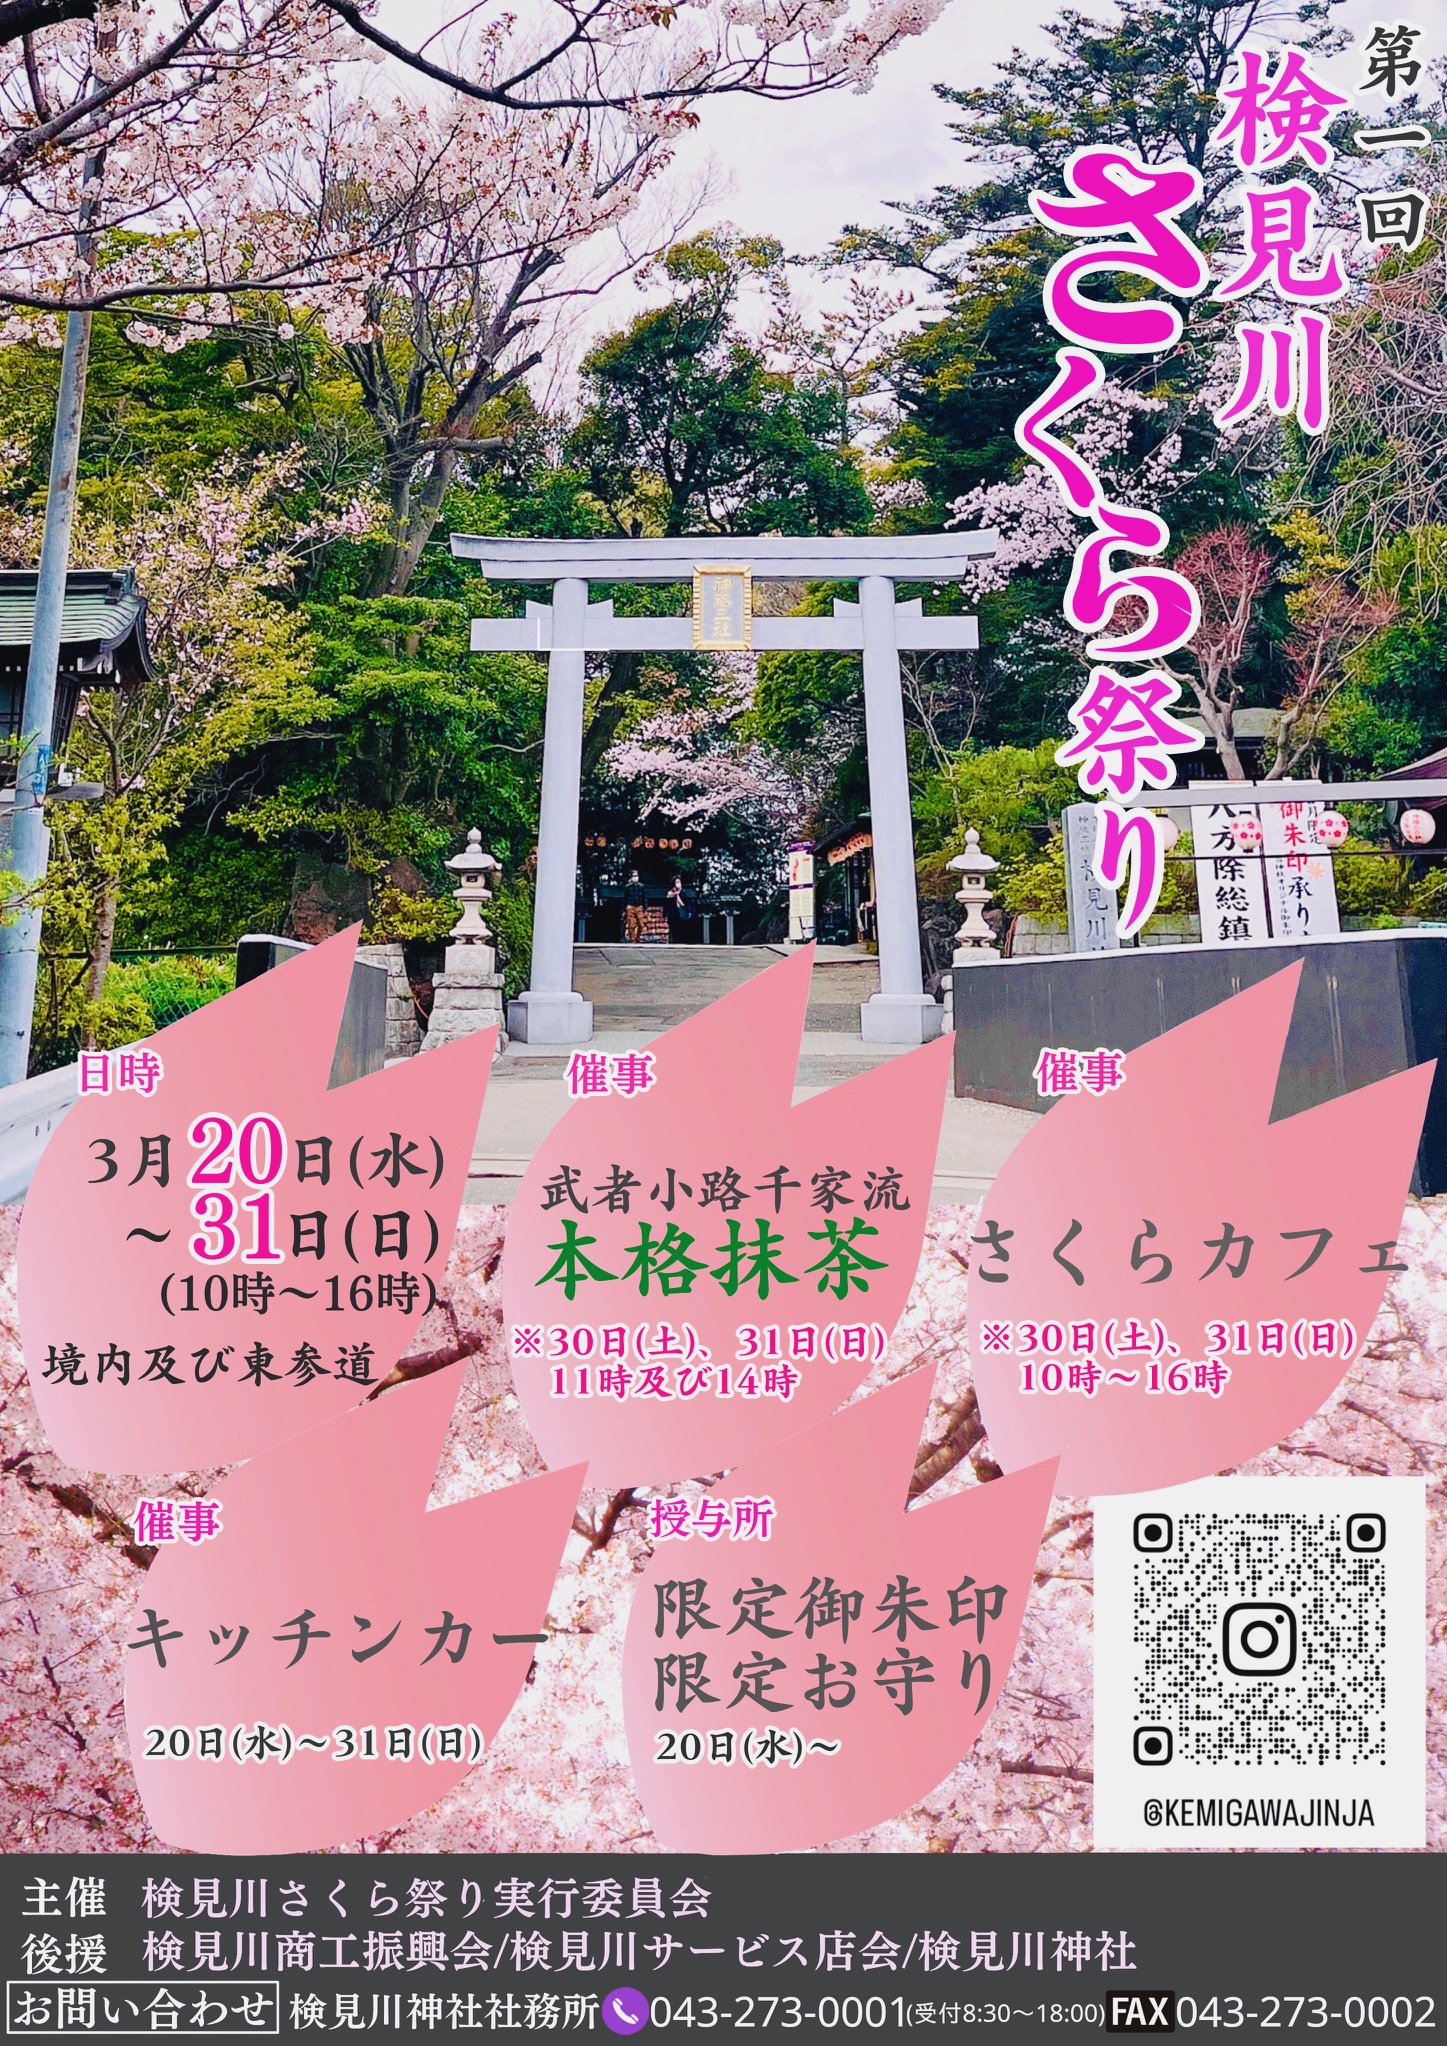 検見川神社で「第1回検見川さくら祭り」が初開催されます。